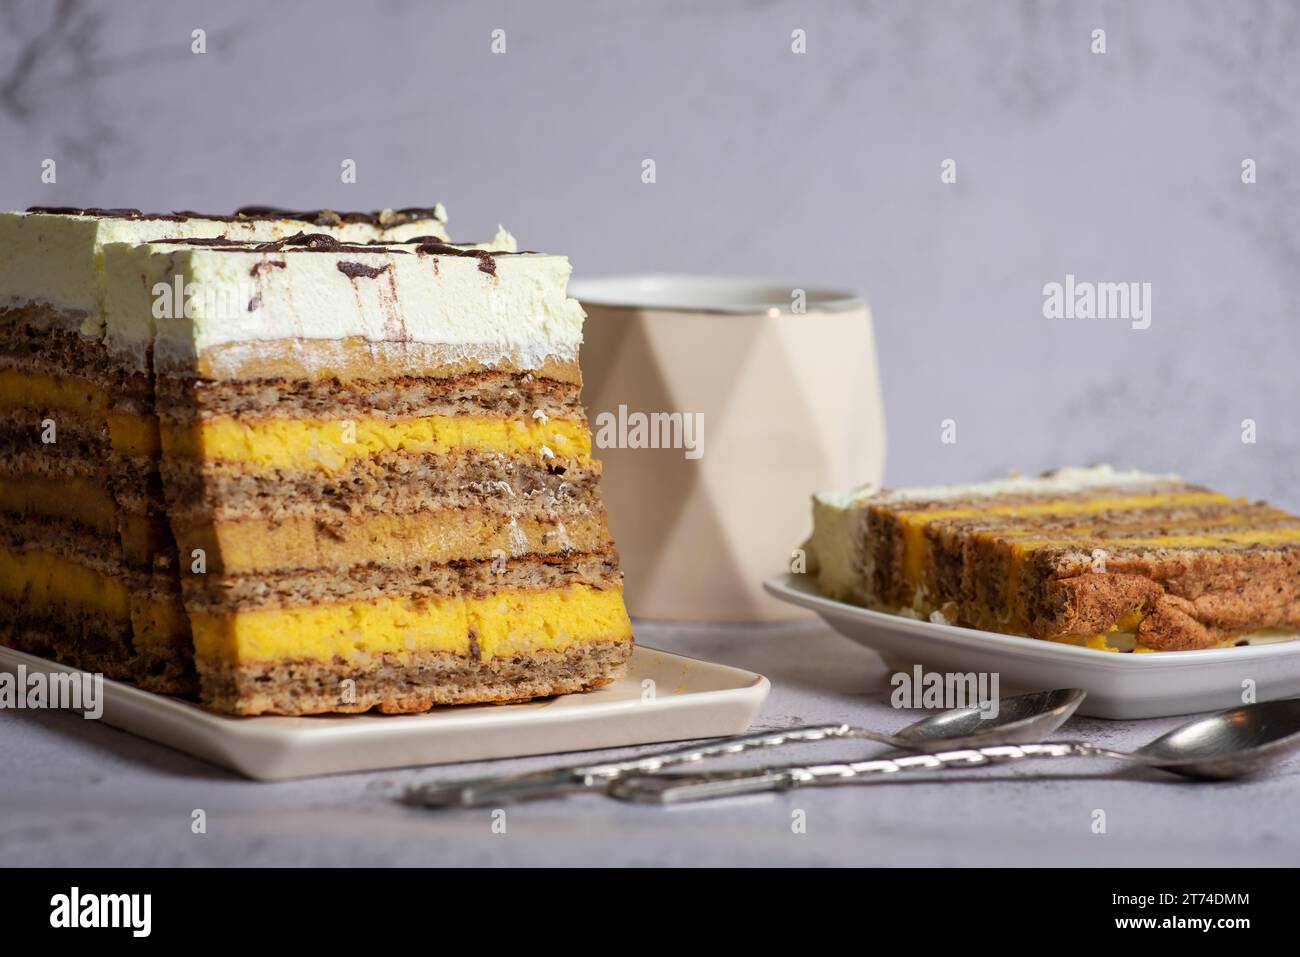 Gâteau aux amandes maison, avec différentes garnitures à la vanille et au cacao, décoré de crème fouettée. Sur un fond gris clair, gros plan Banque D'Images